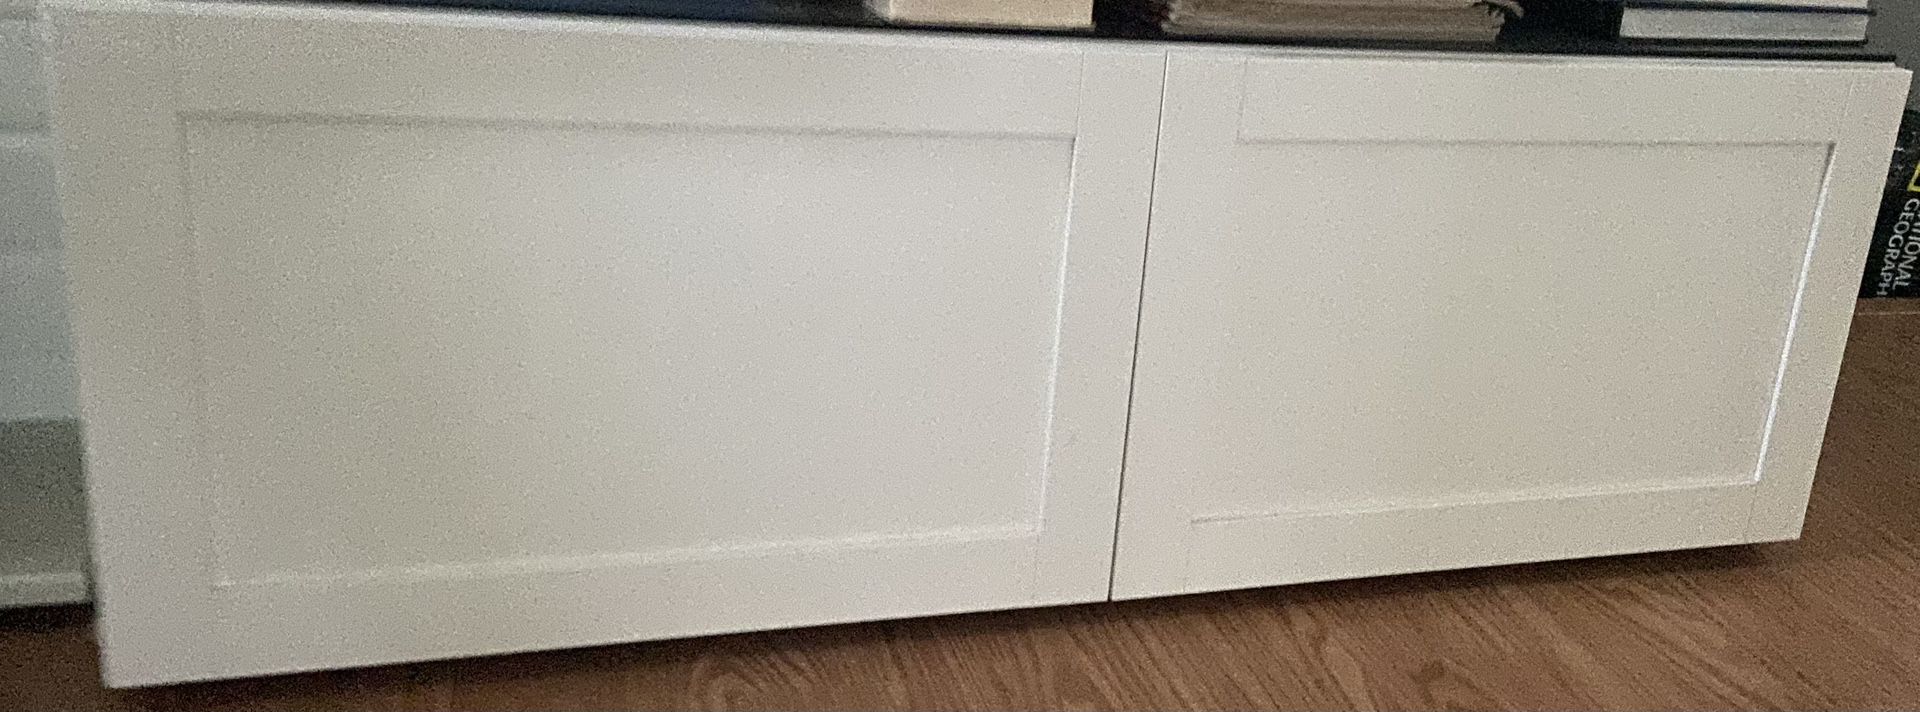 IKEA Besta cabinet